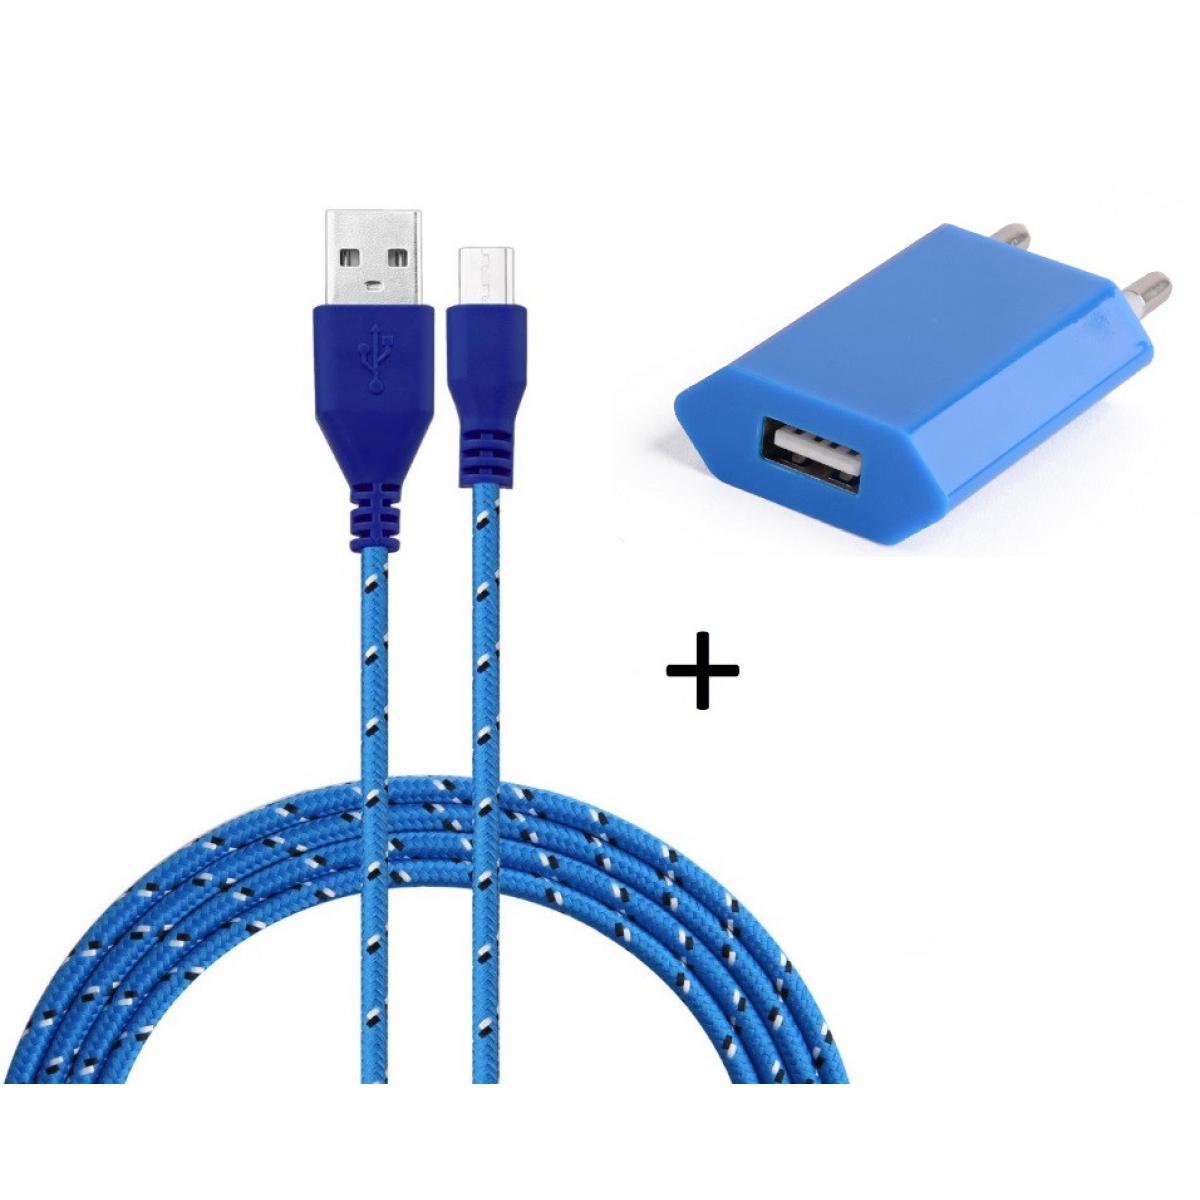 Shot - Pack Chargeur pour GIONEE F9 Smartphone Micro USB (Cable Tresse 3m Chargeur + Prise Secteur USB) Murale Android (BLEU) - Chargeur secteur téléphone